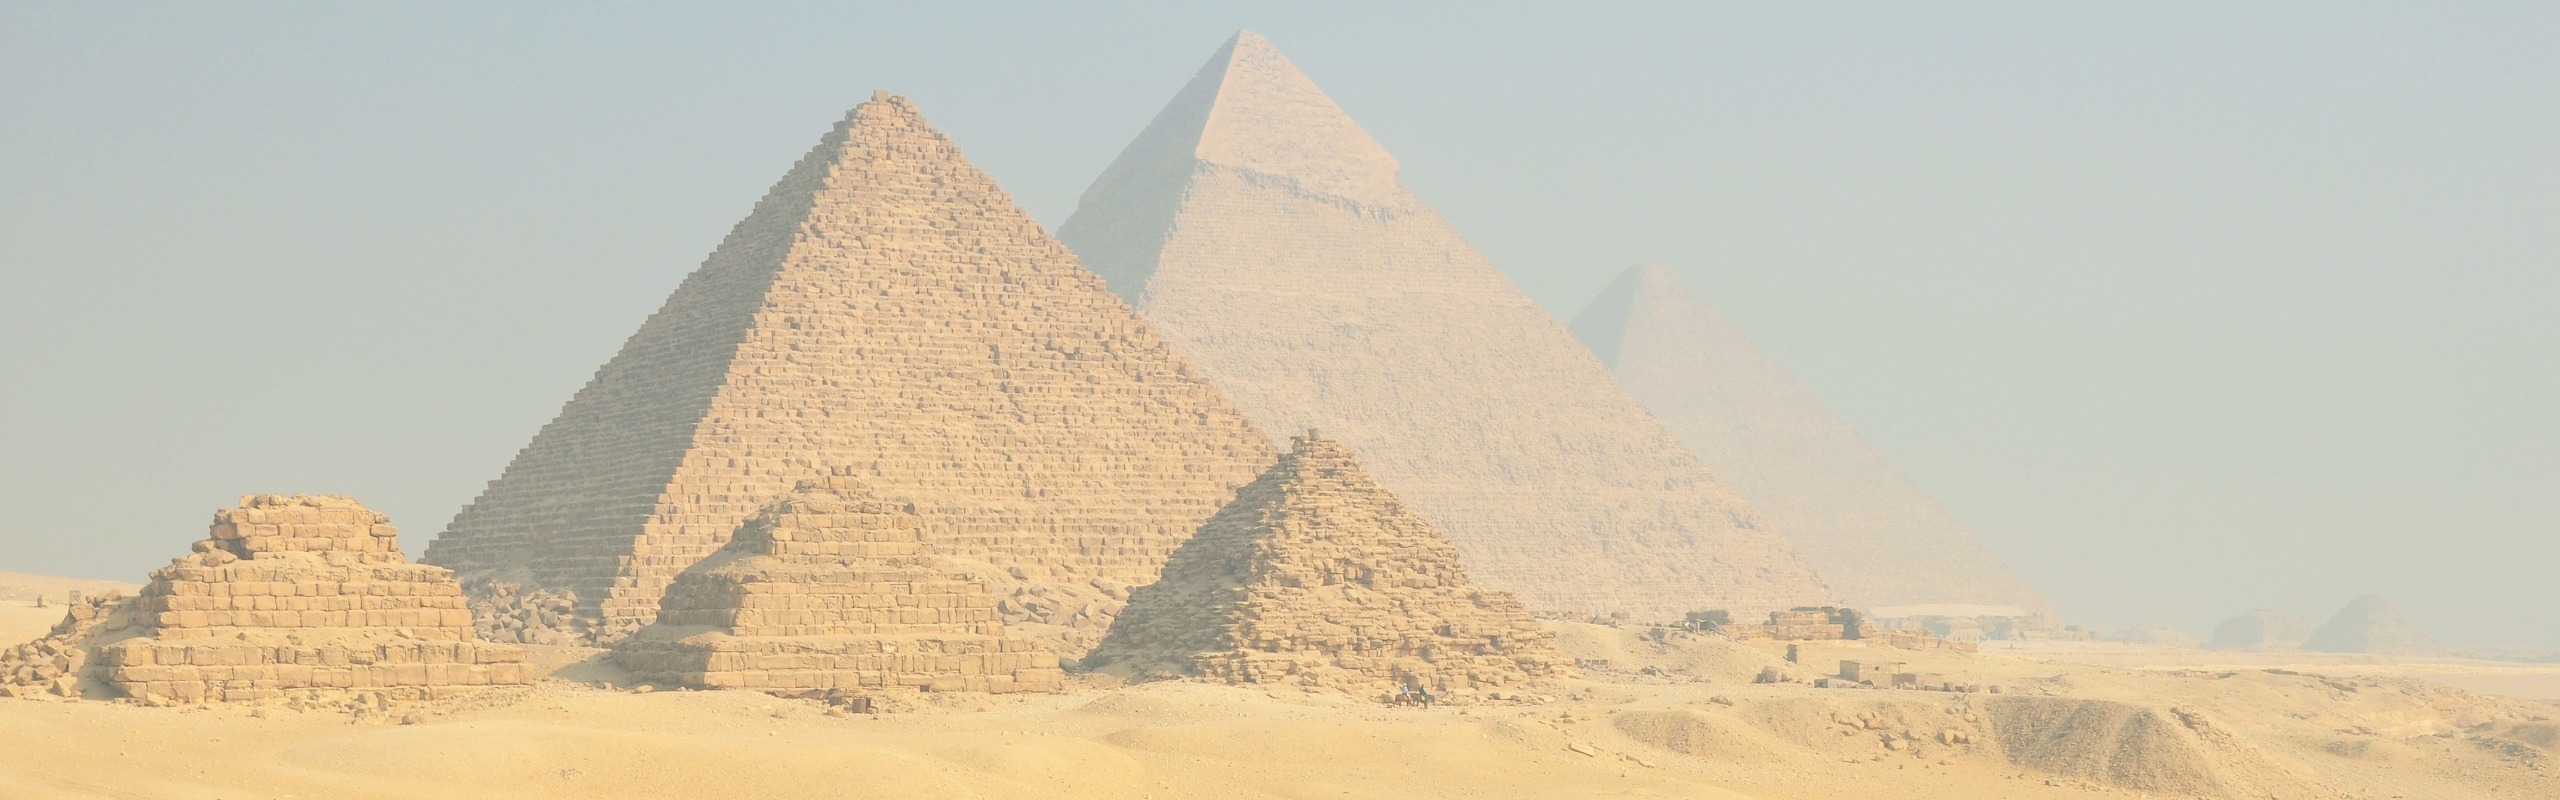 The Pyramids of Giza: Location, History, Travel Tips...